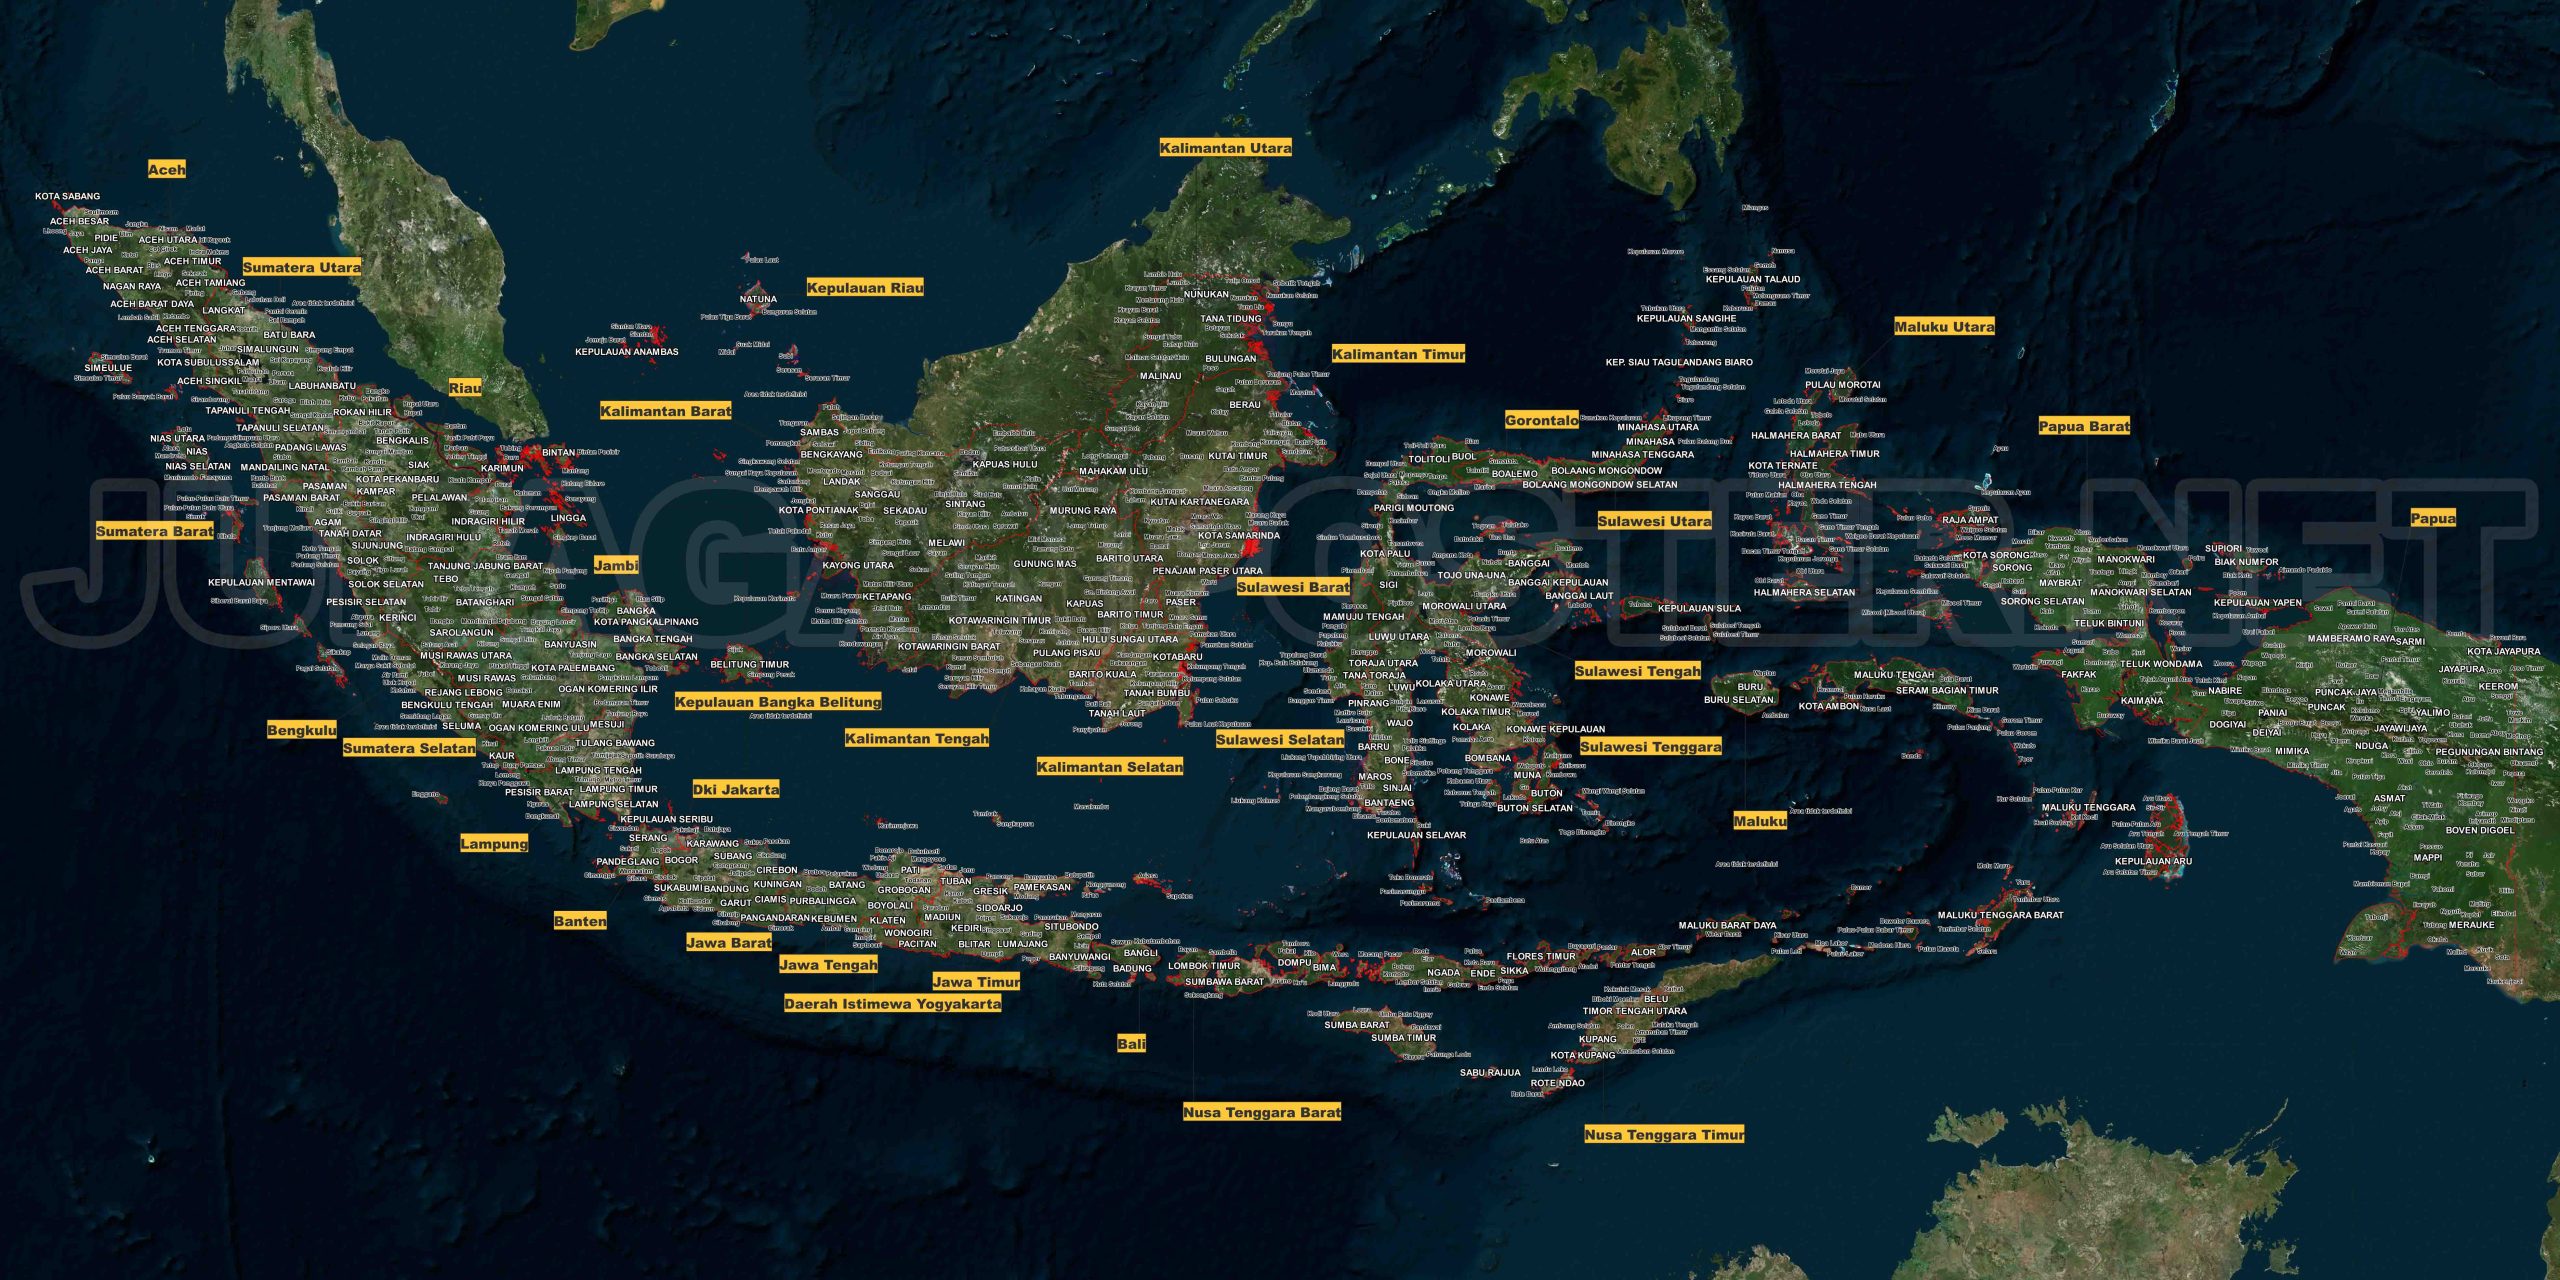 Tugas Menggambar Peta Indonesia: Ekspresikan Kreativitasmu